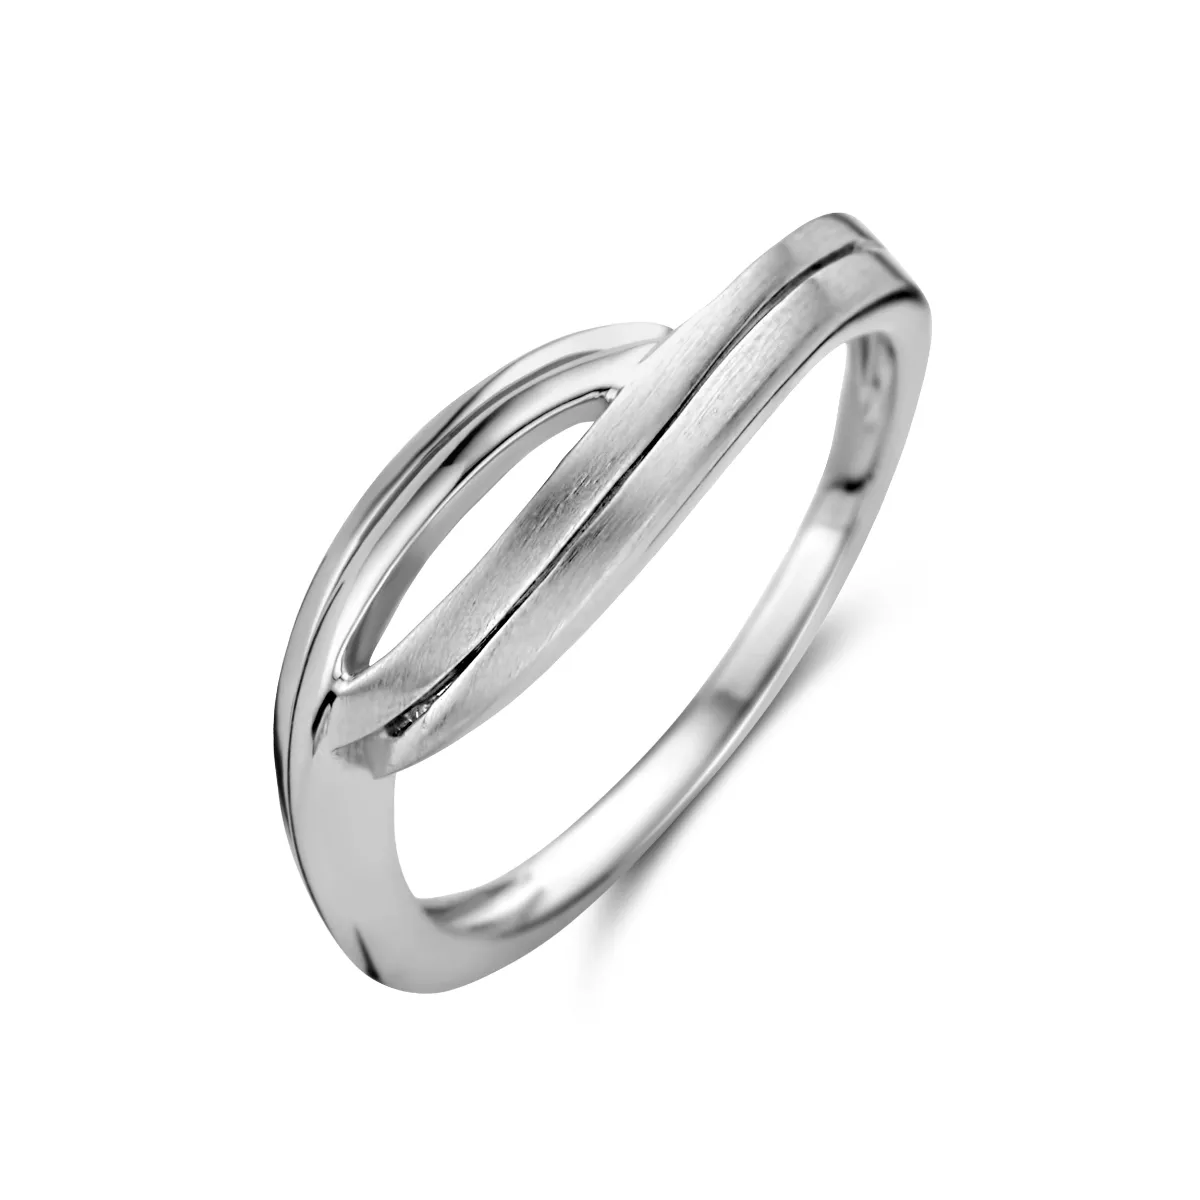 Ring Fantasie zilver-zirconia 6 mm 